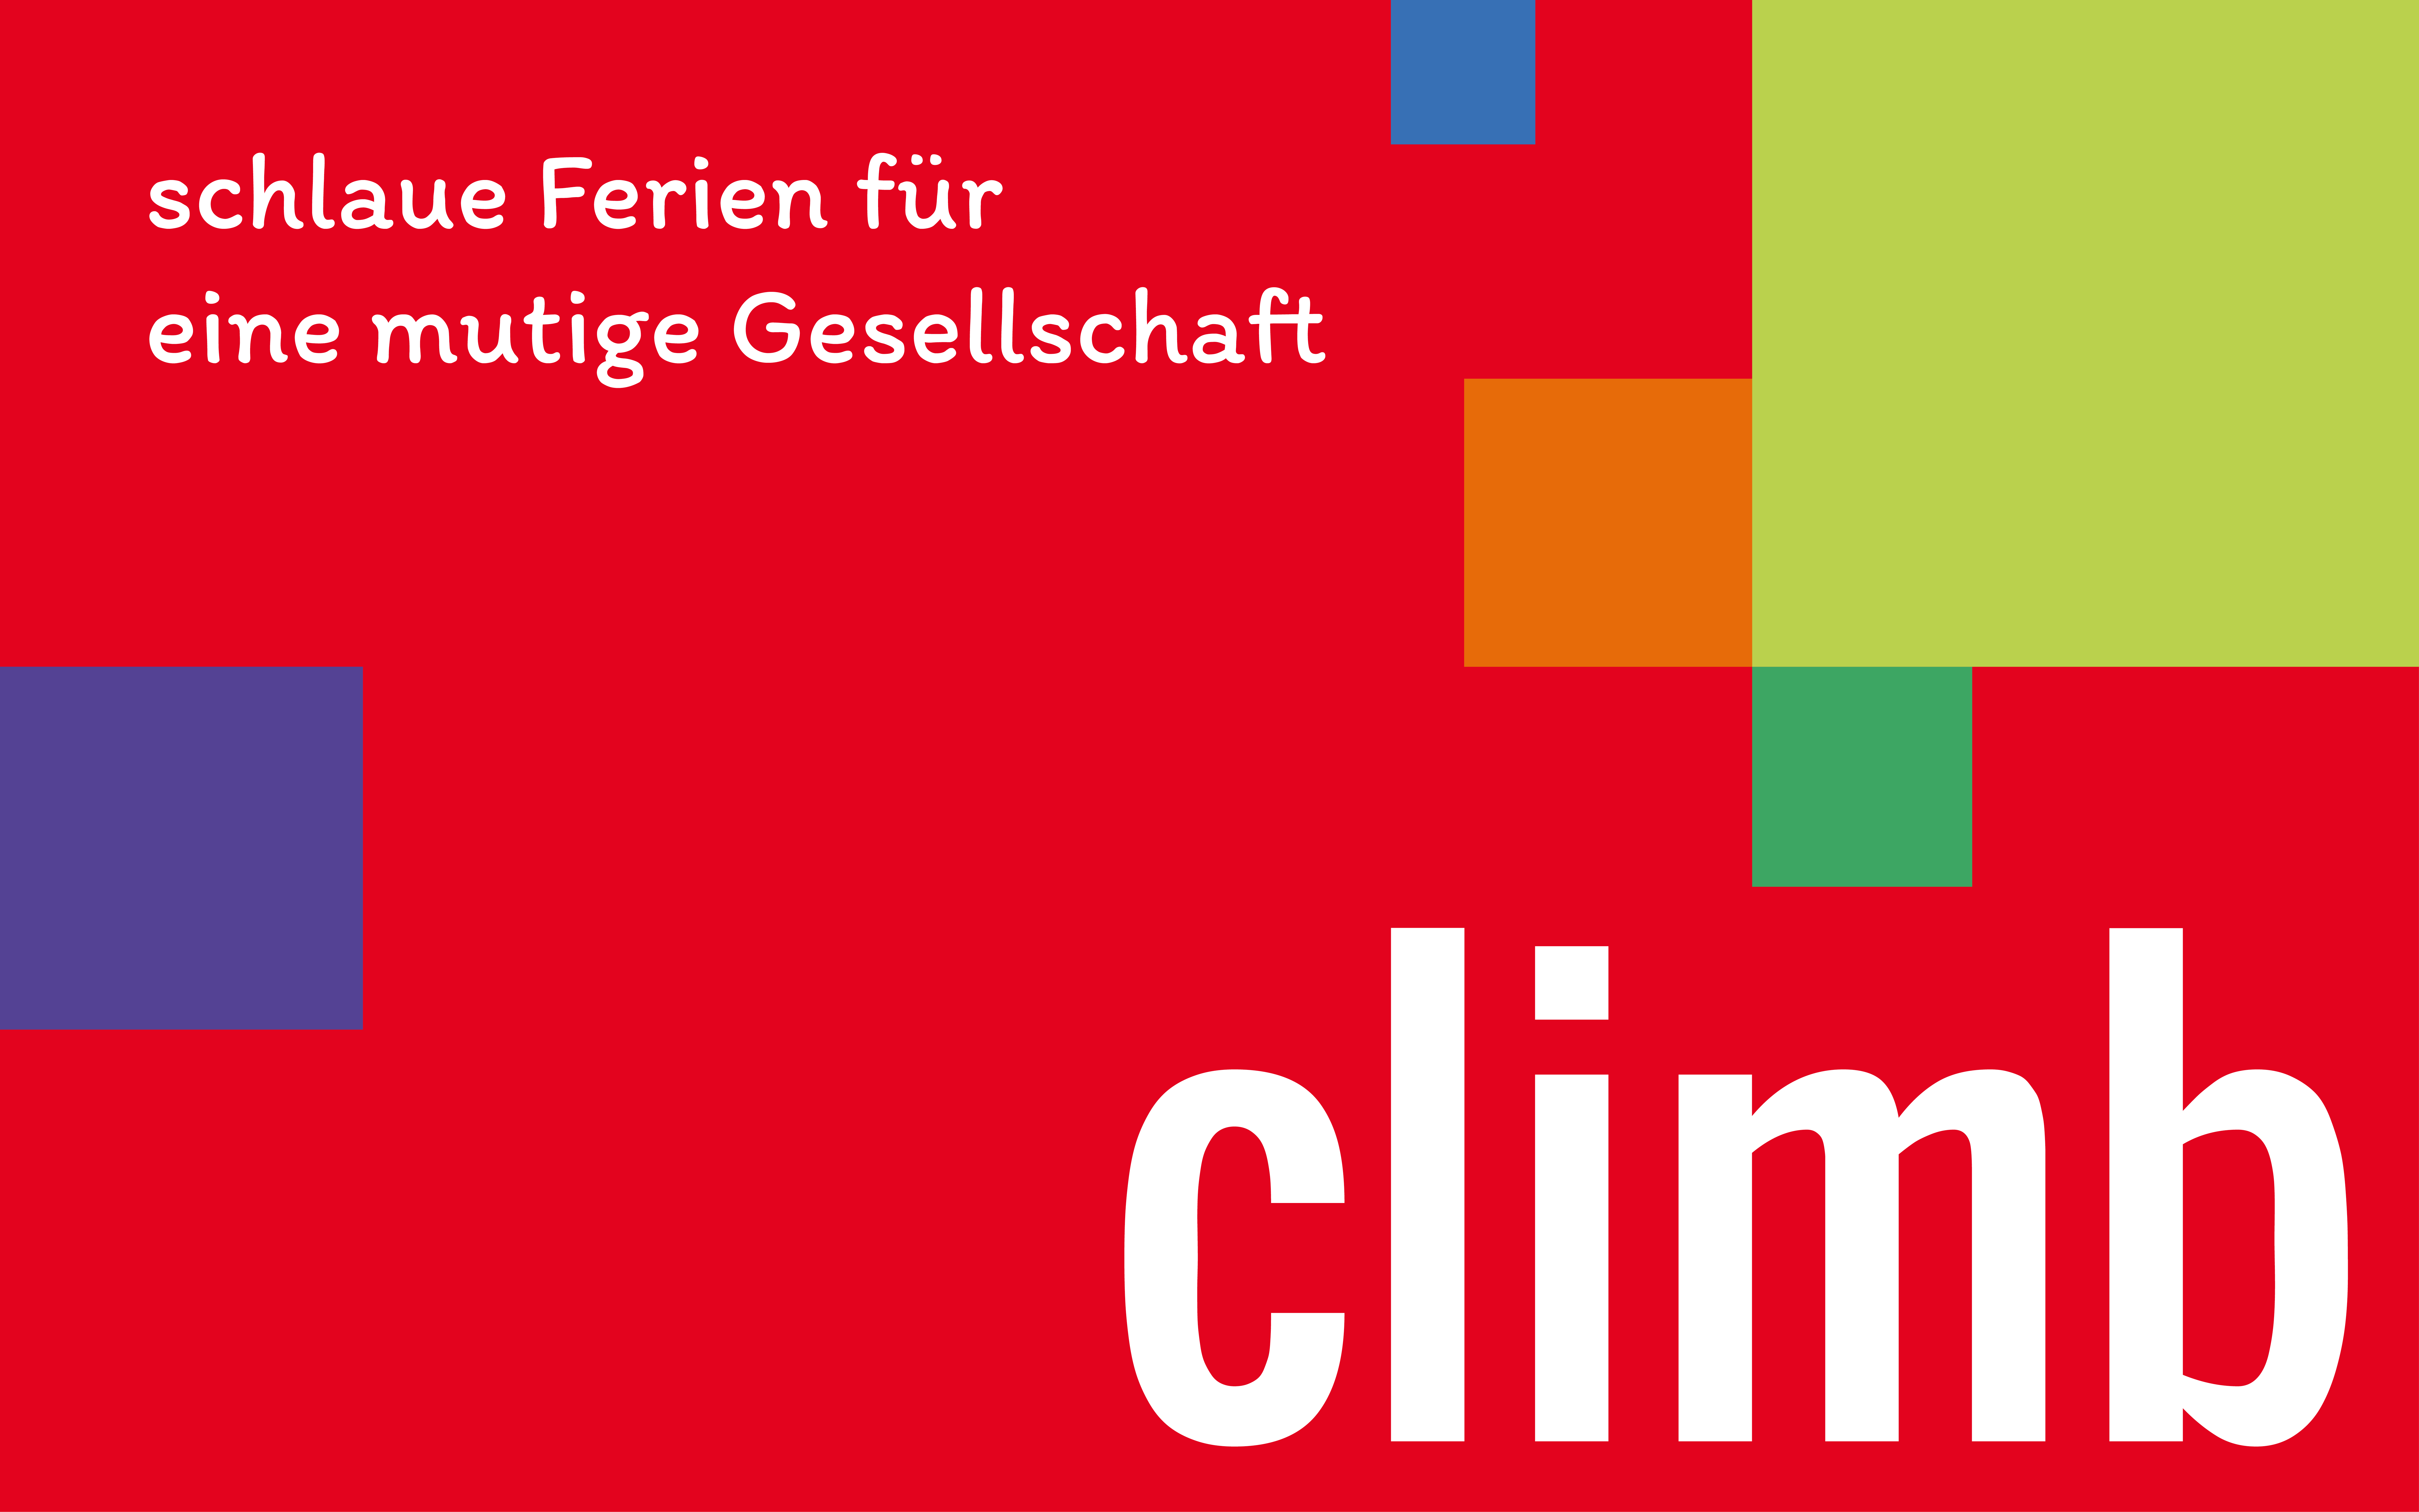 gemeinnützige CLIMB GmbH